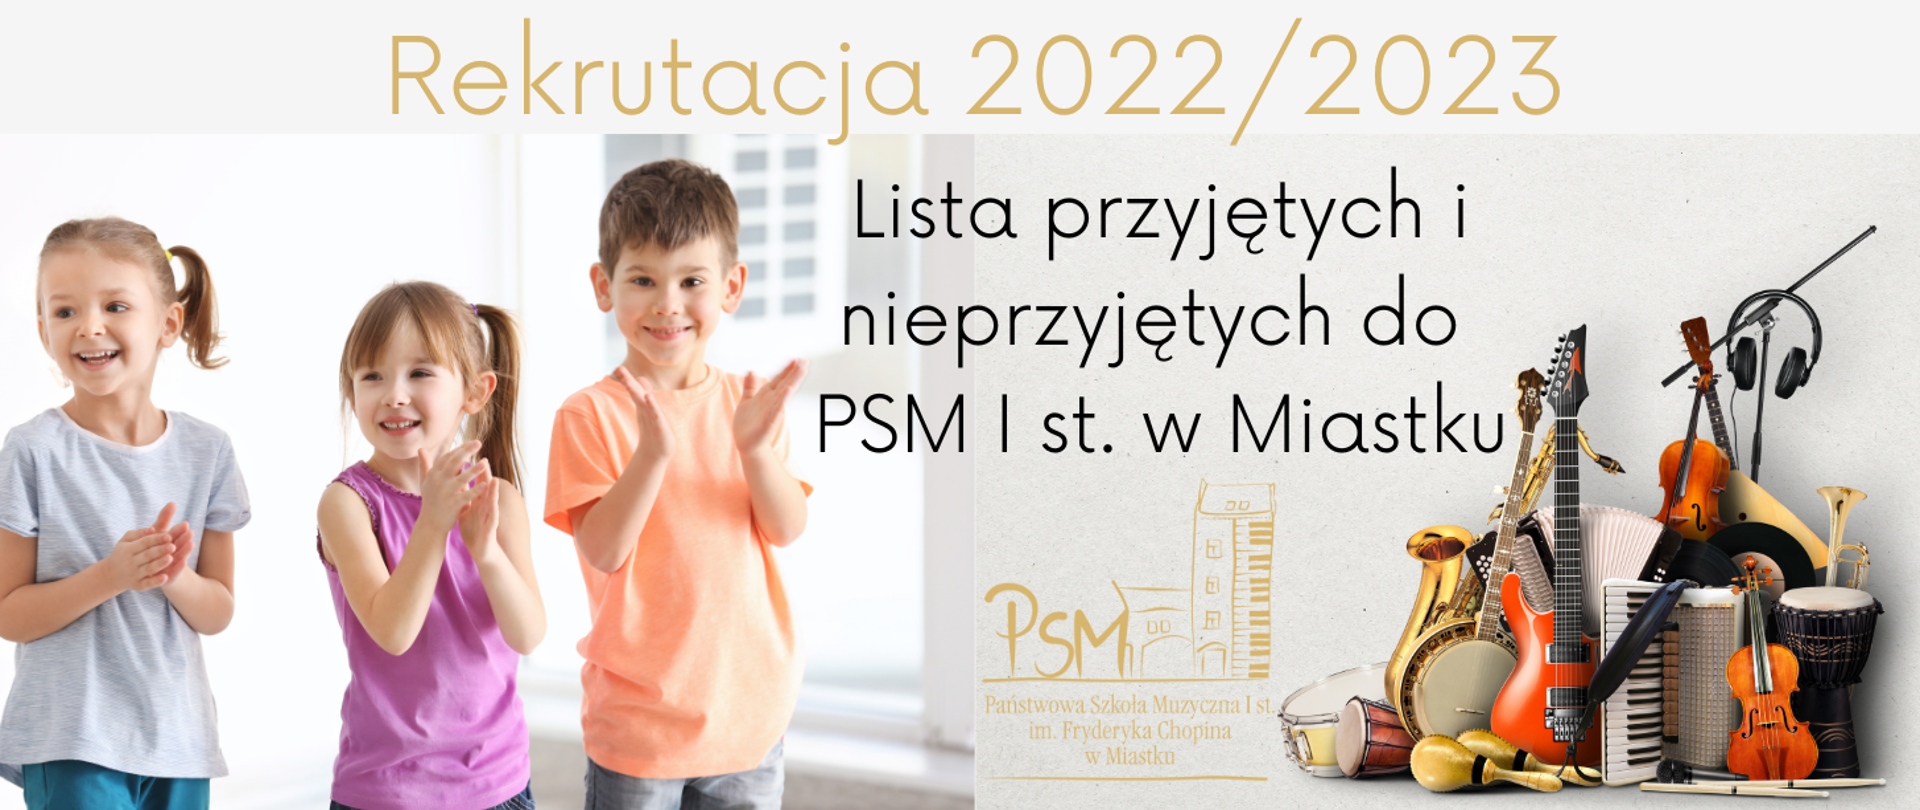 Grafika przedstawiająca po lewej stronie uśmiechnięte dzieci po prawej stronie instrumenty muzyczne oraz teks na środku: "Rekrutacja 2022/2023 - Lista przyjętych i nieprzyjętych do PSM I st. w Miastku"